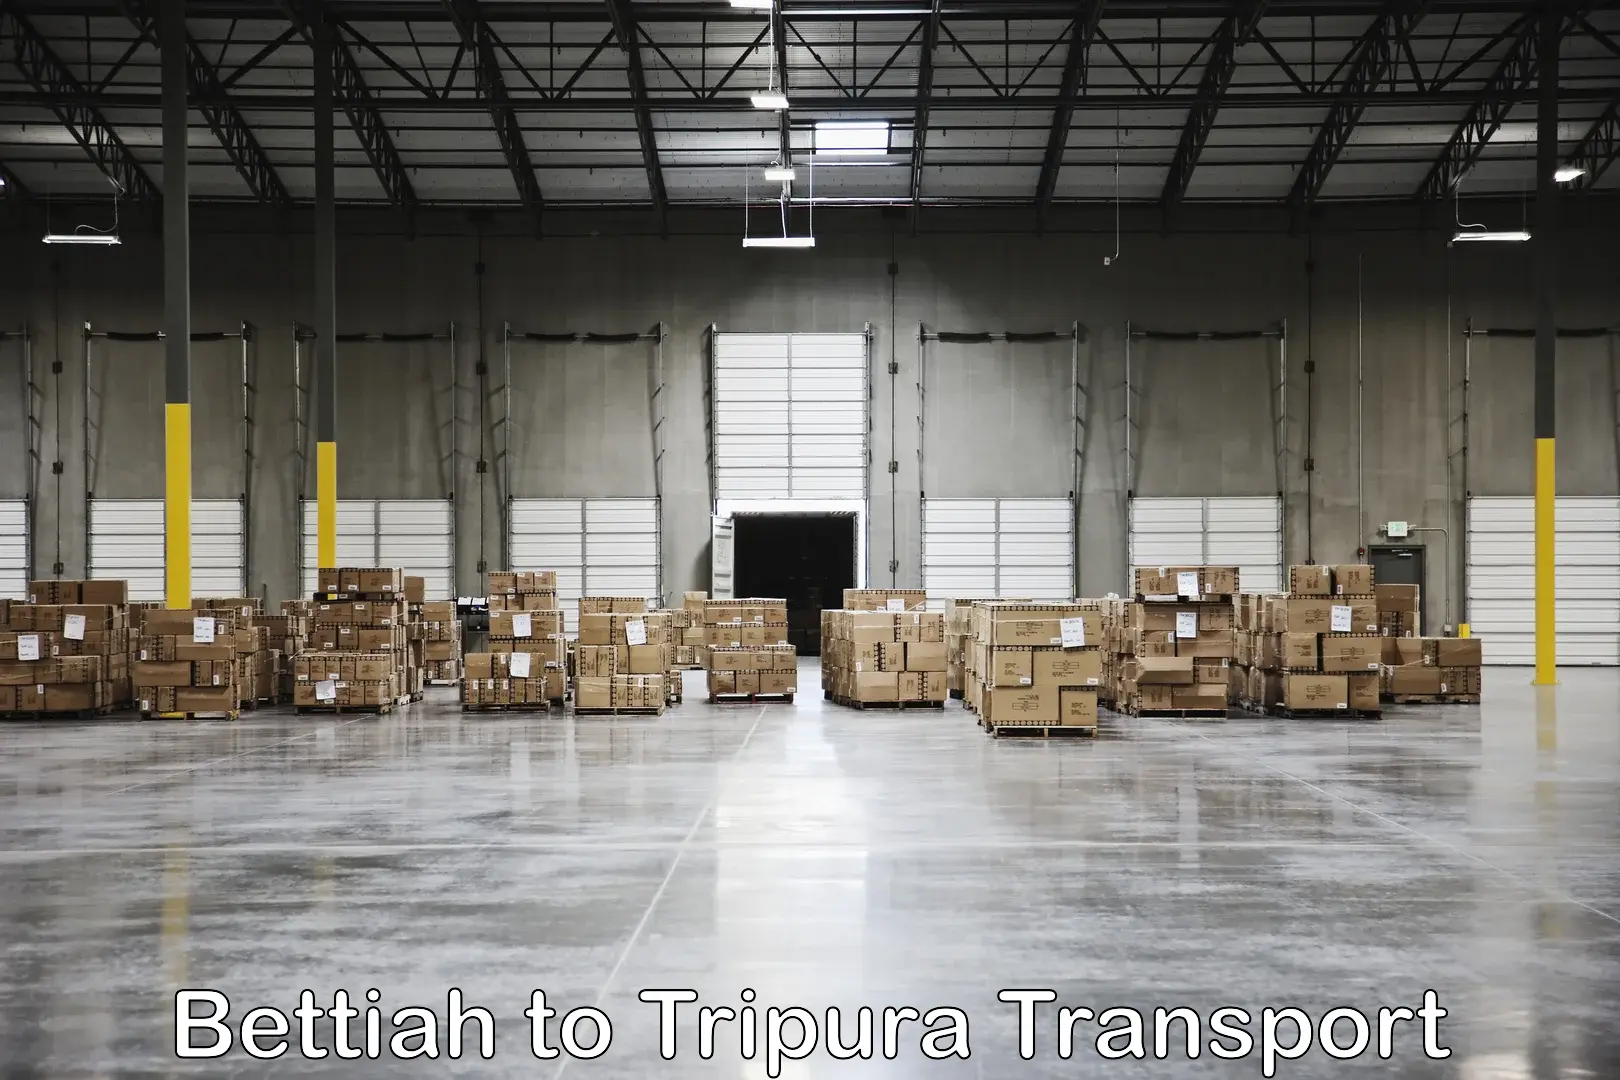 Air cargo transport services Bettiah to Udaipur Tripura